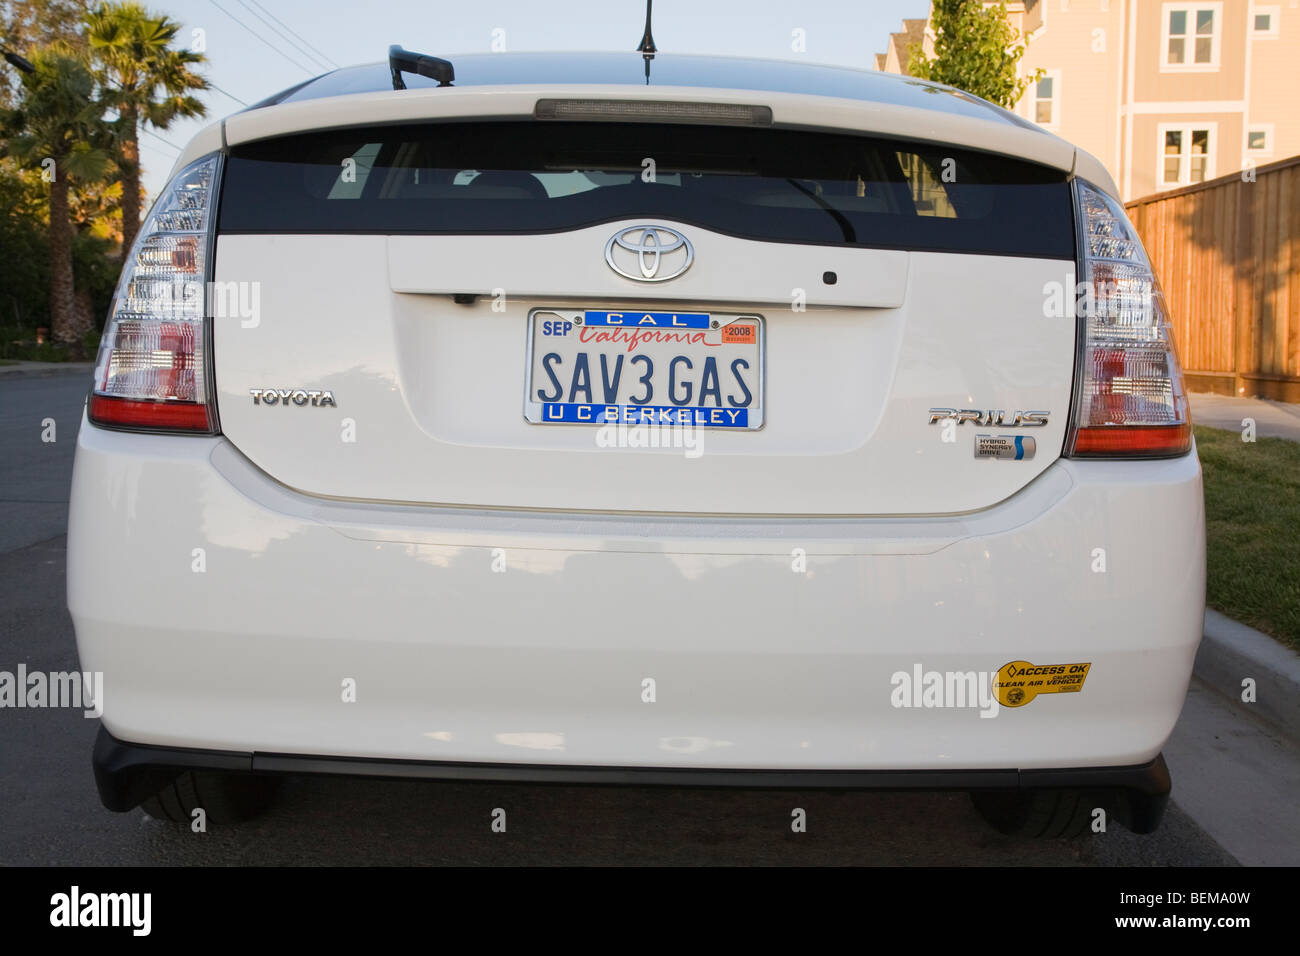 Heckansicht des weißen Toyota Prius mit einer "SAV3 GAS" (sparen Gas) Kennzeichen und eine saubere Luft-Fahrzeug-Aufkleber. Stockfoto